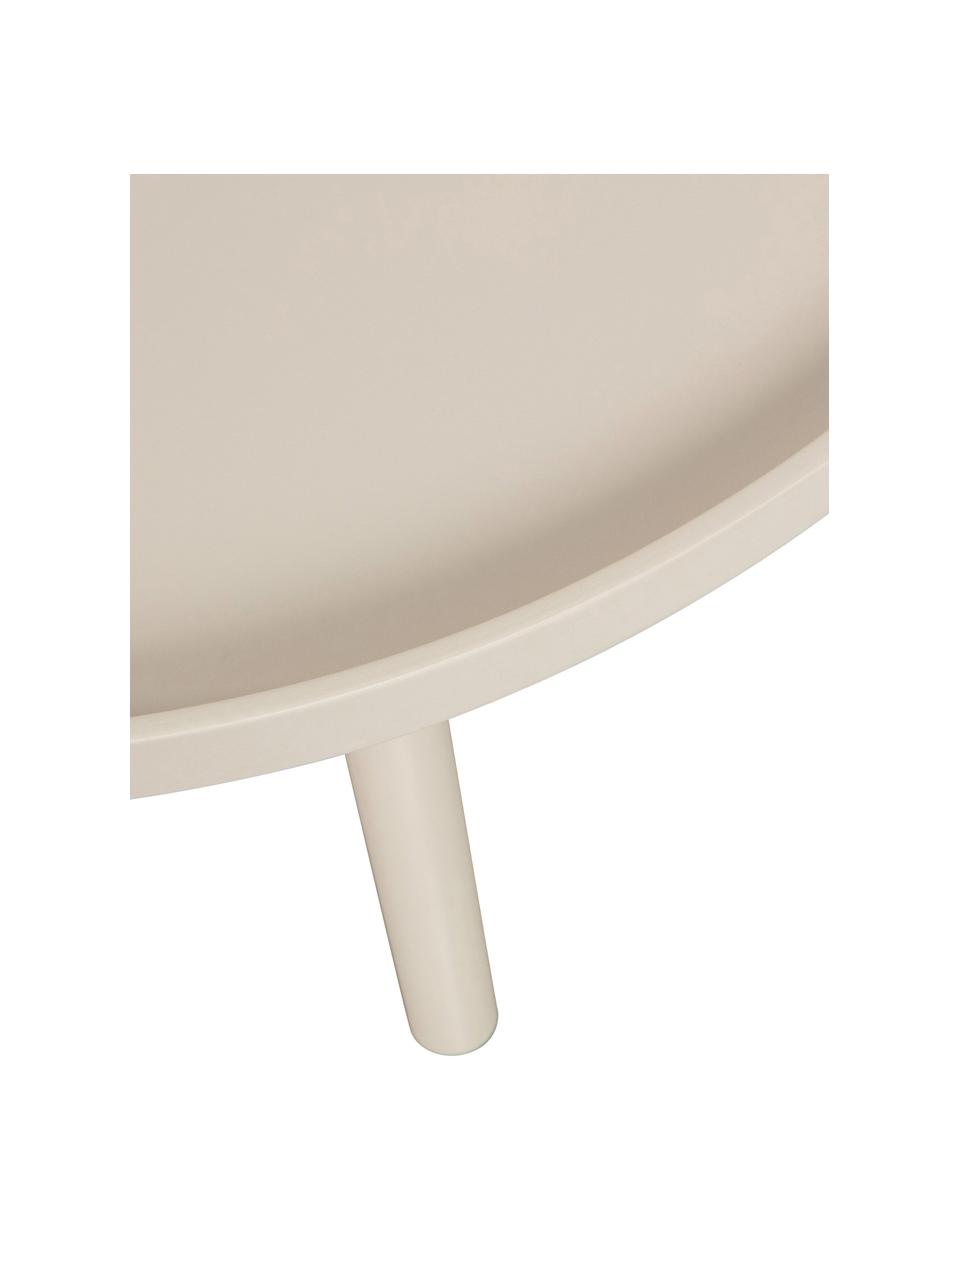 Runder Couchtisch Mesa, Tischplatte: Mitteldichte Holzfaserpla, Beine: Kiefernholz, beschichtet, Beige, Ø 60 cm